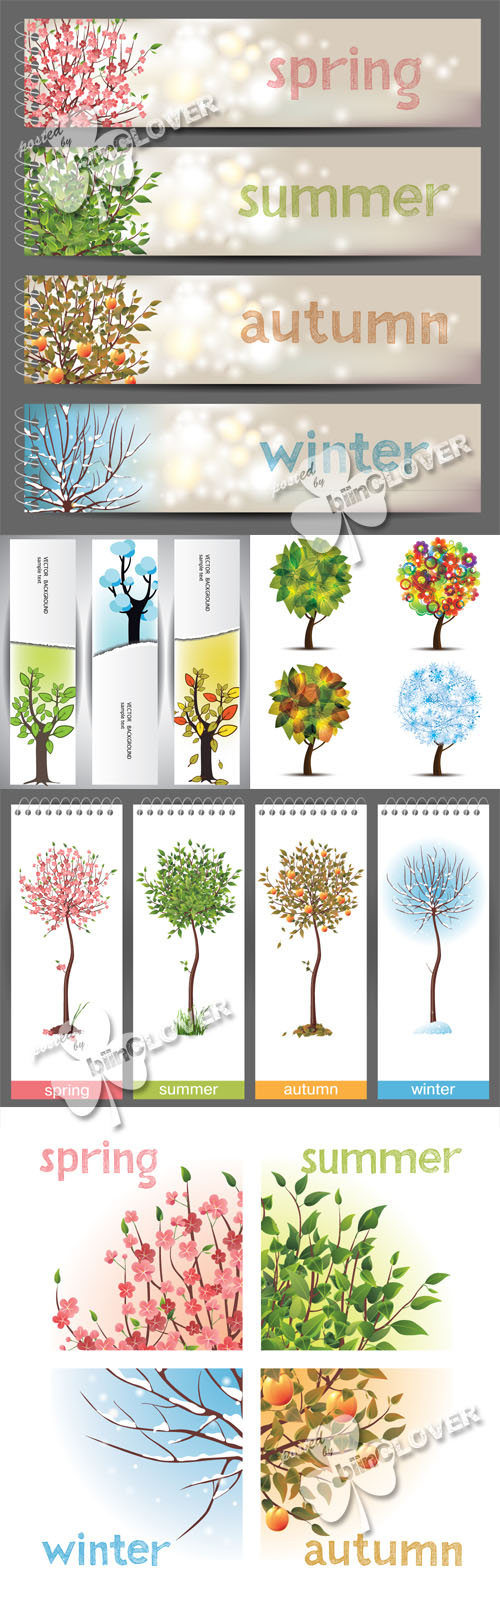 Four season trees 0408